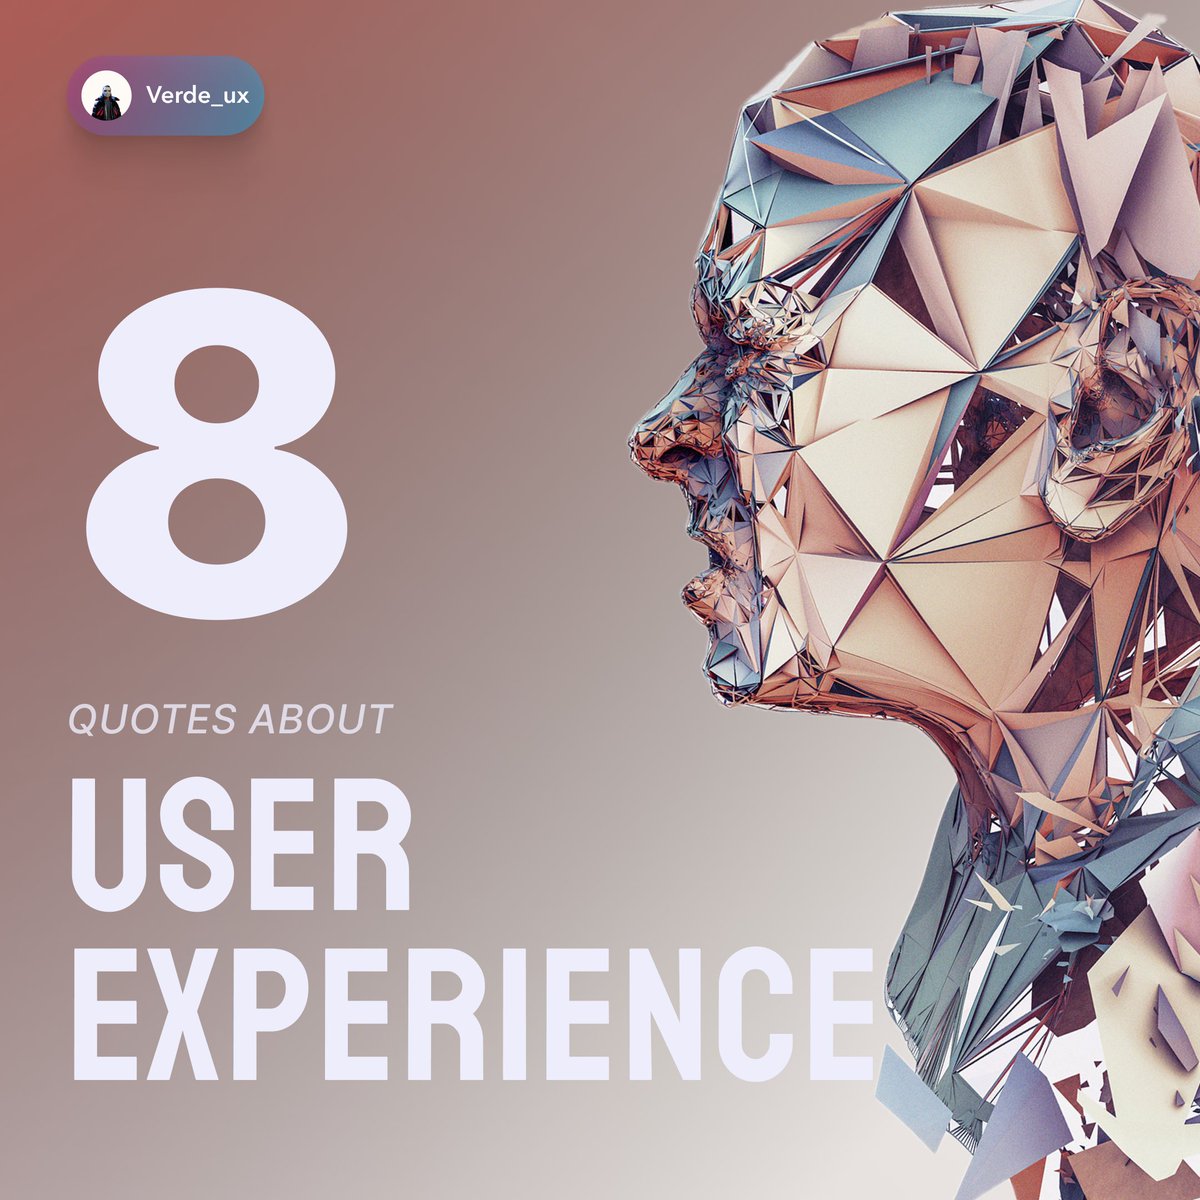 Here are 10 famous quotes about User experience from reputable designers.
#design #designer #designprinciples #designrules #designtips #ux #ui #uxui #uiux #uxtips #uxdesign #uxdesigner #uidesign #uidesigner #uitips #uirules #uiuxdesign